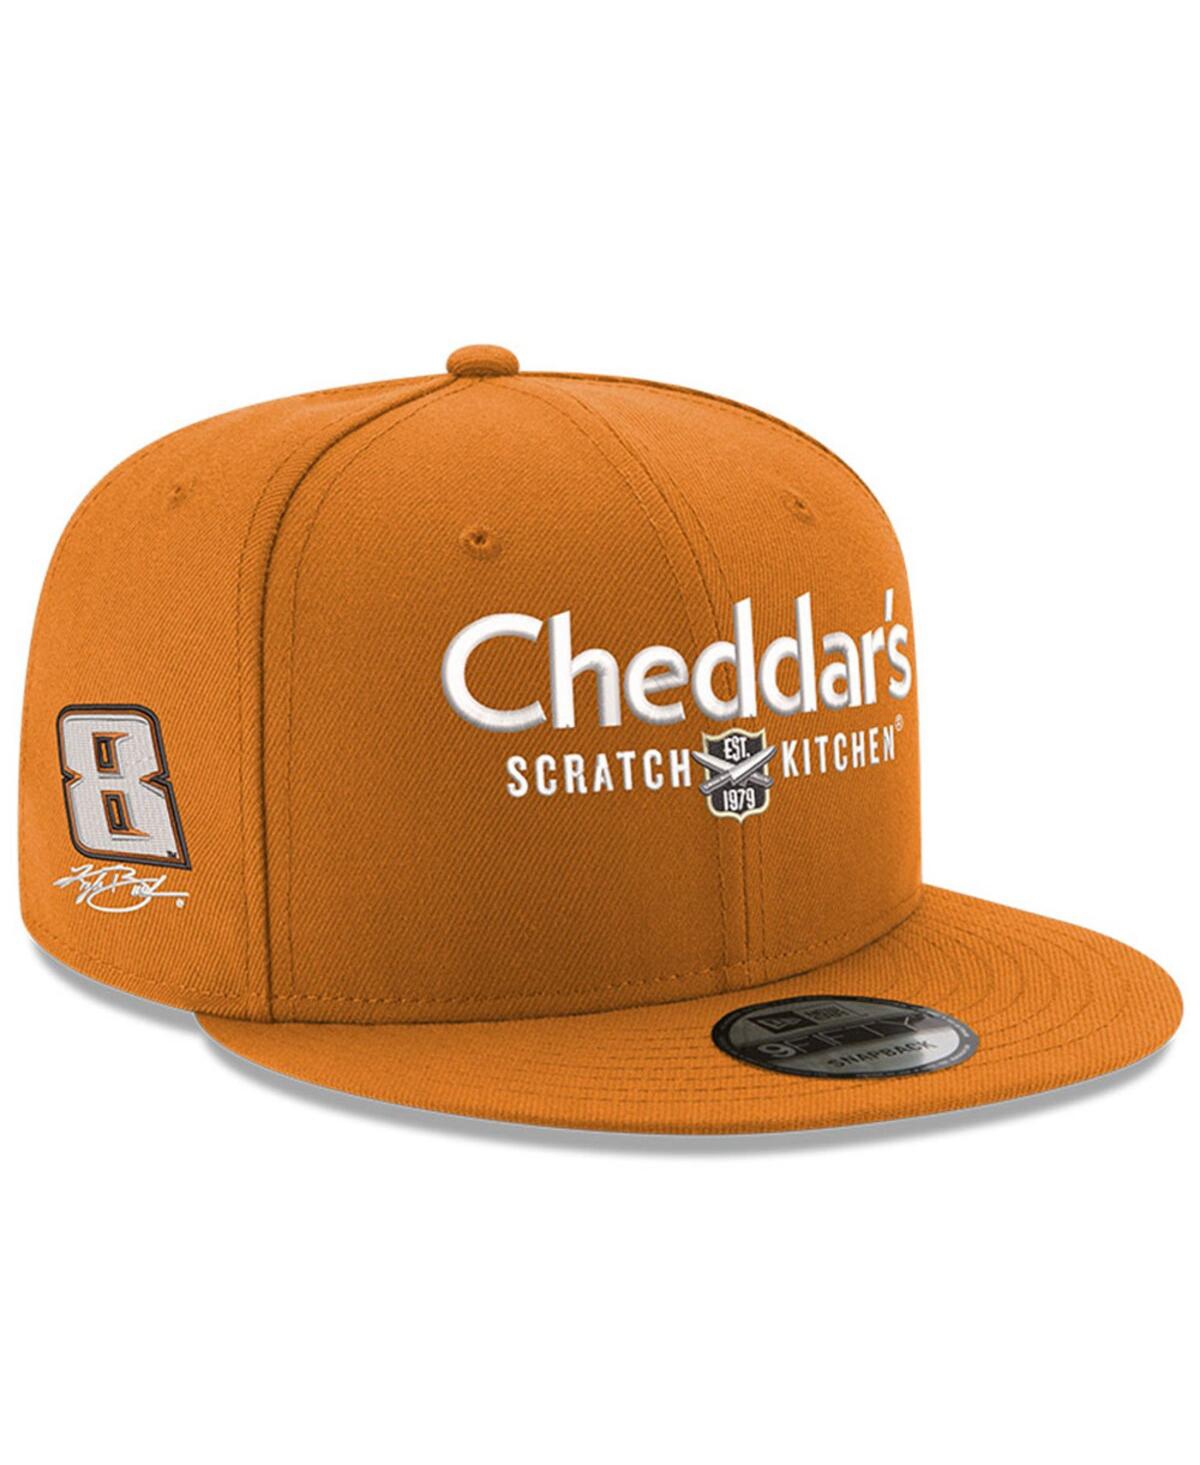 New Era Men's  Orange Kyle Busch 9fifty Cheddar's Adjustable Hat